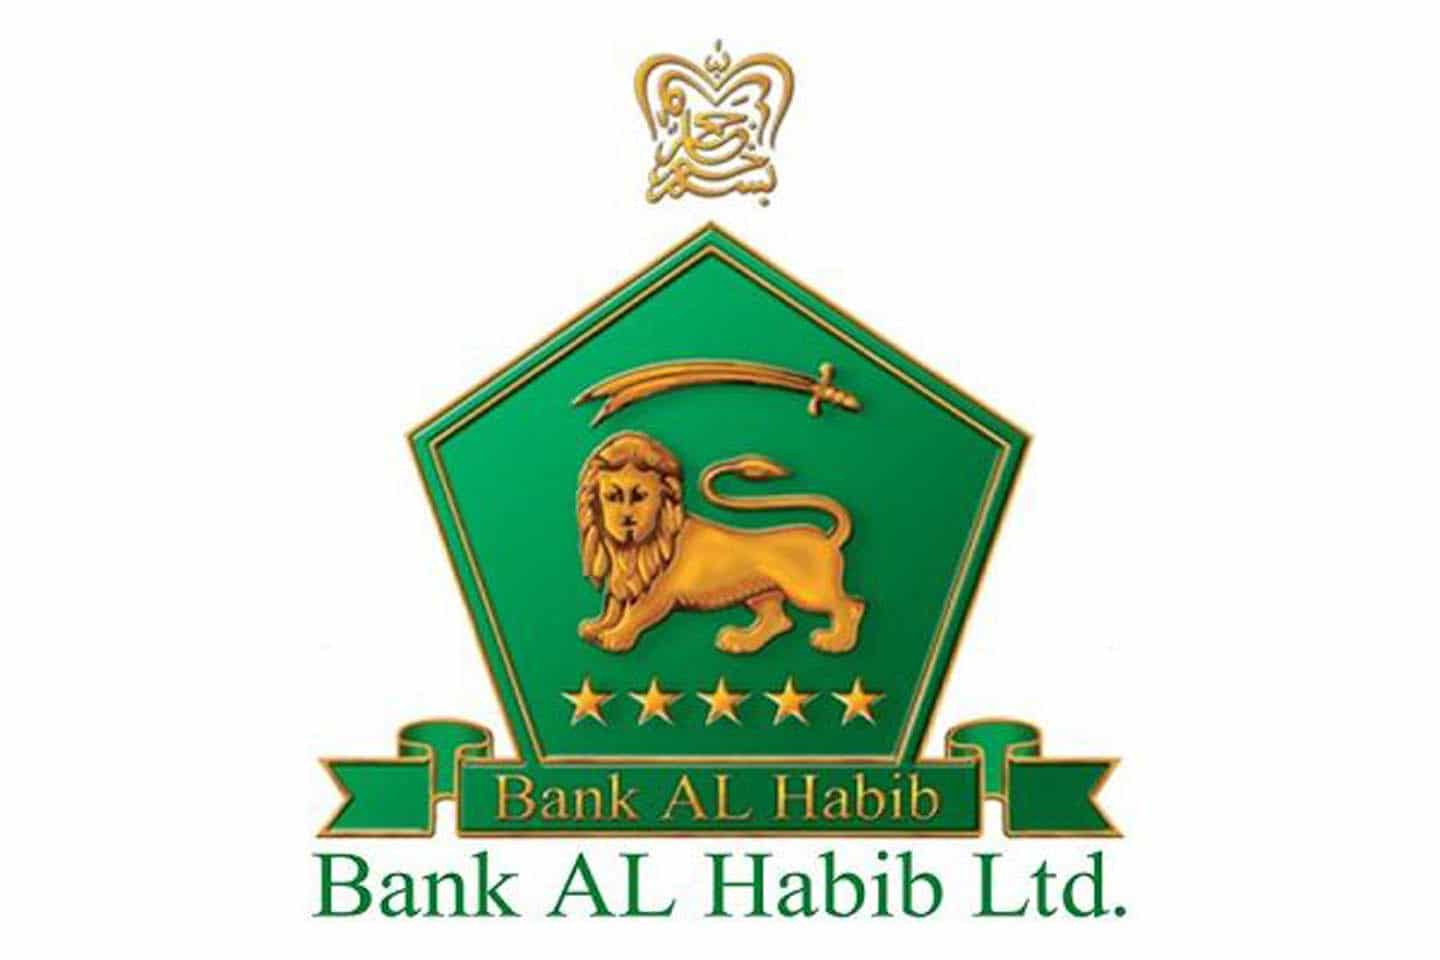 Bank AL Habib declares Rs. 18.70 billion profit after tax